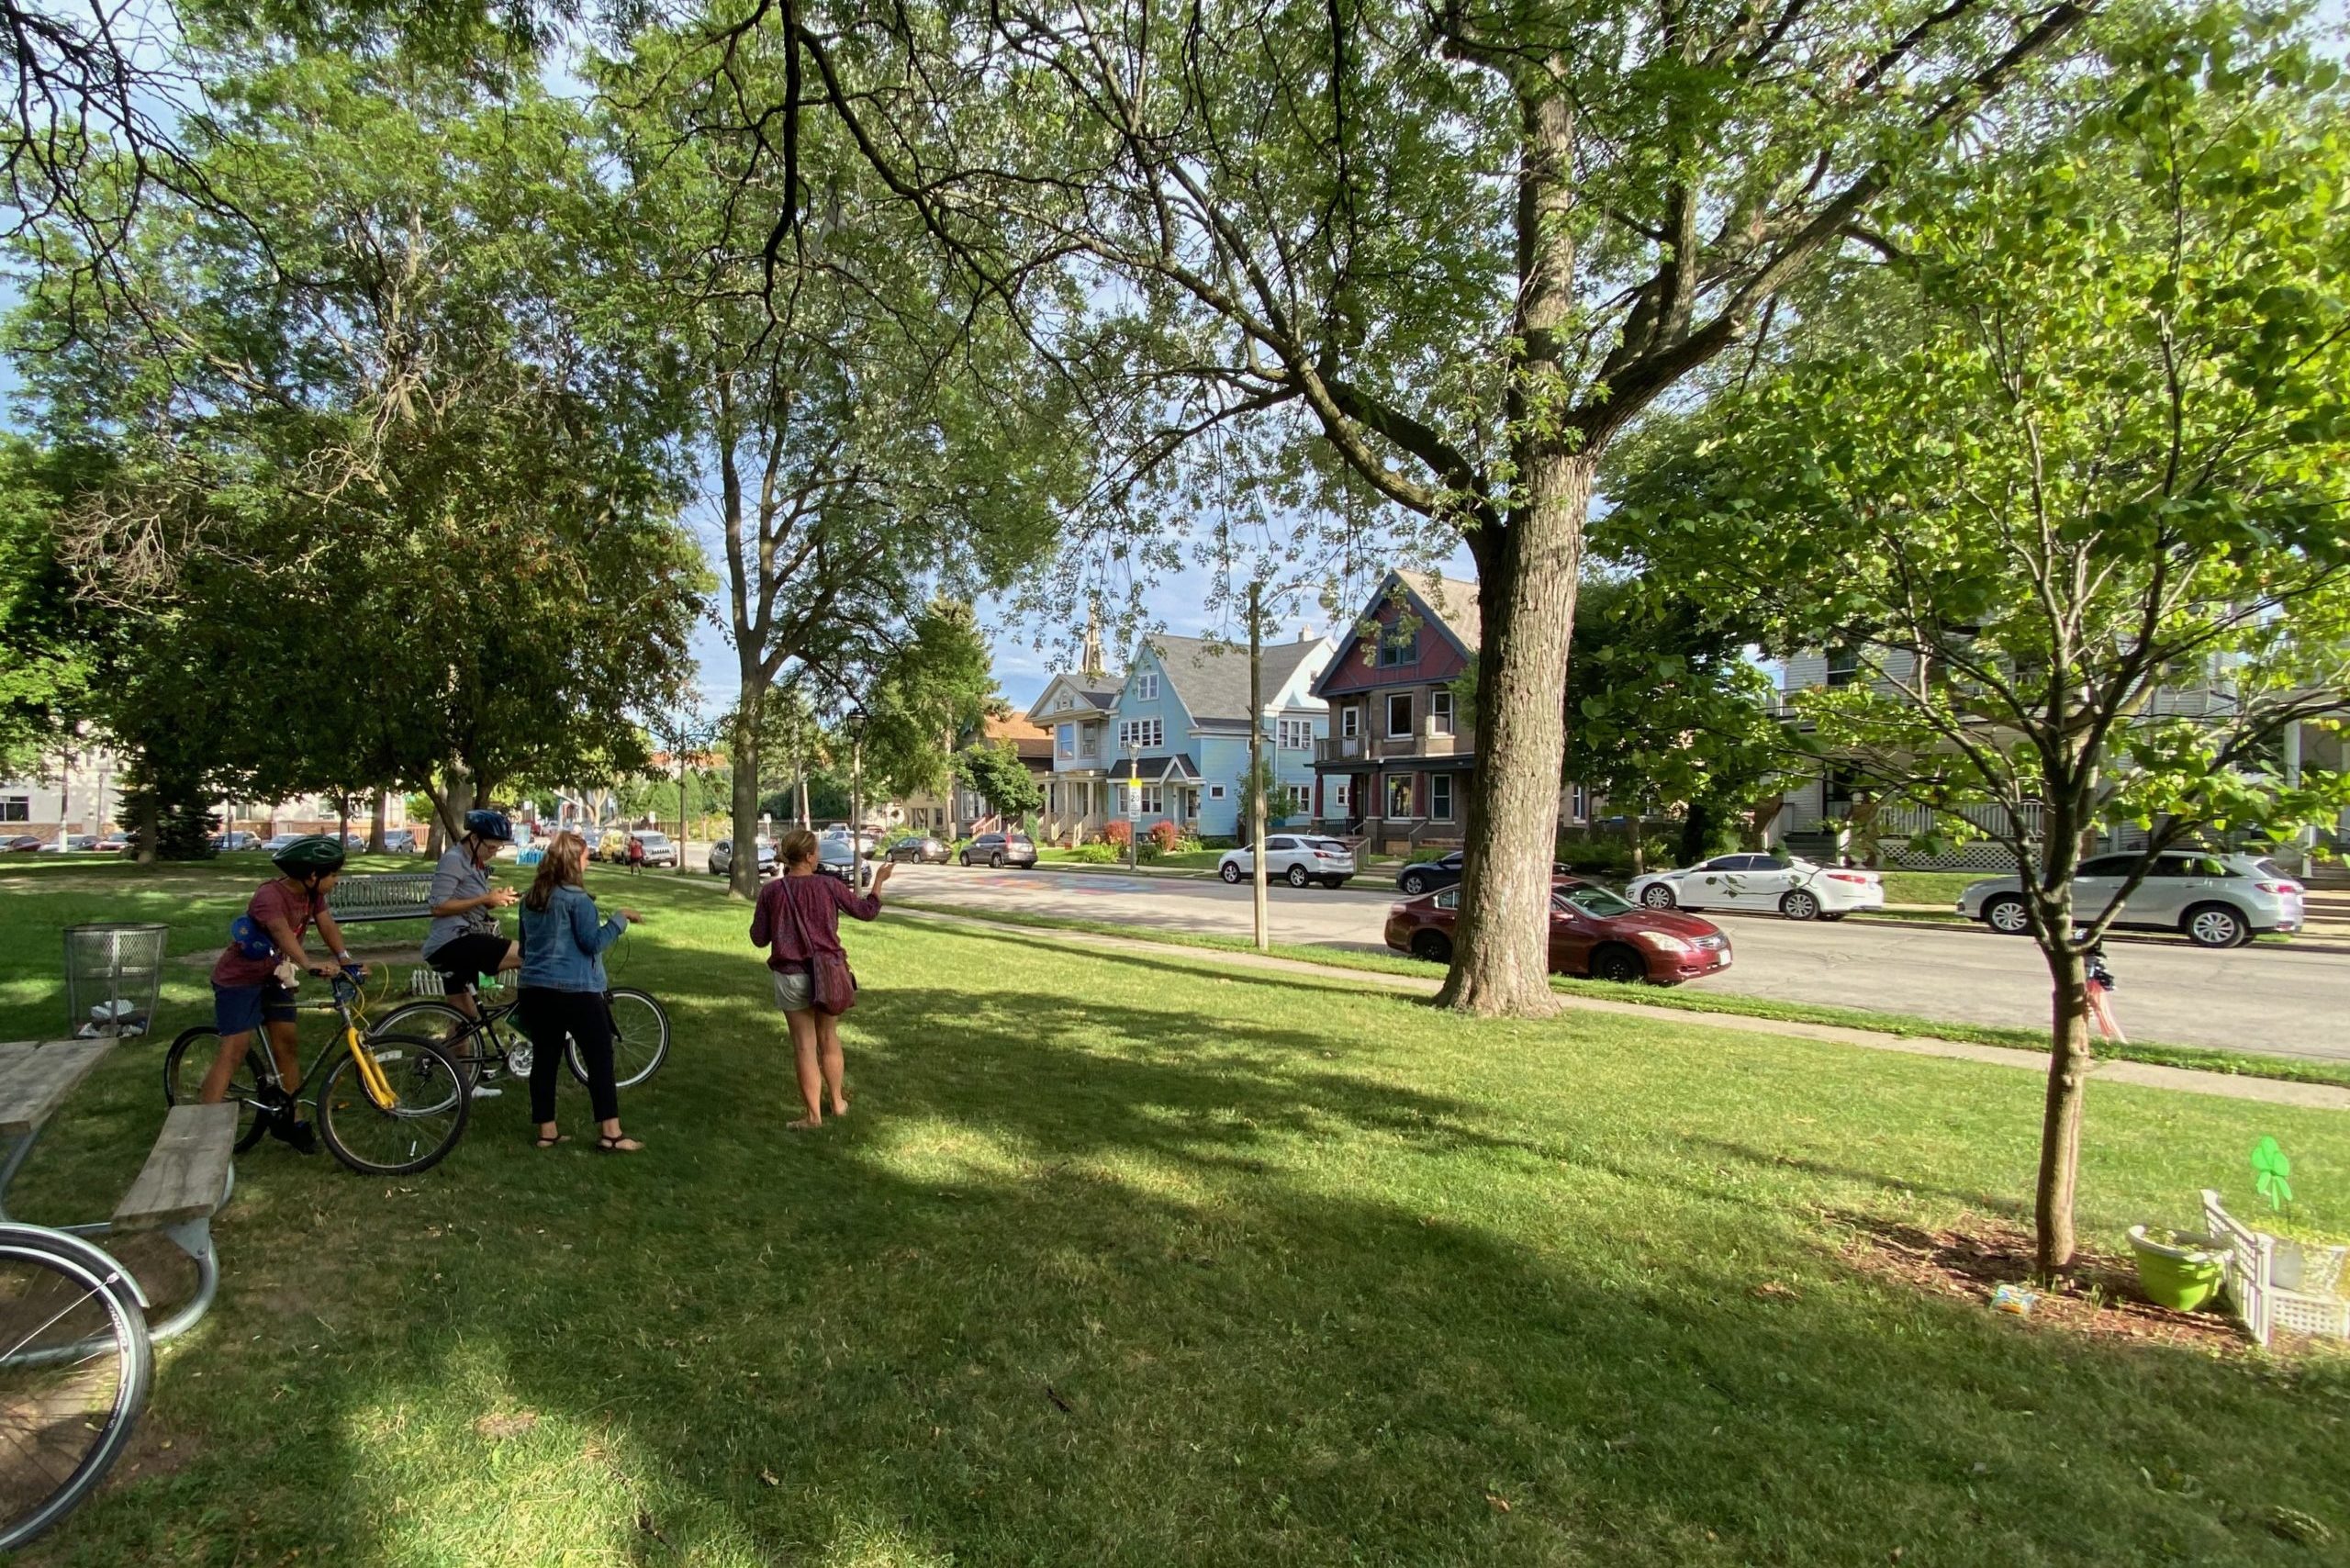 Ciclistas y paseantes en un parque conversando bajo los árboles